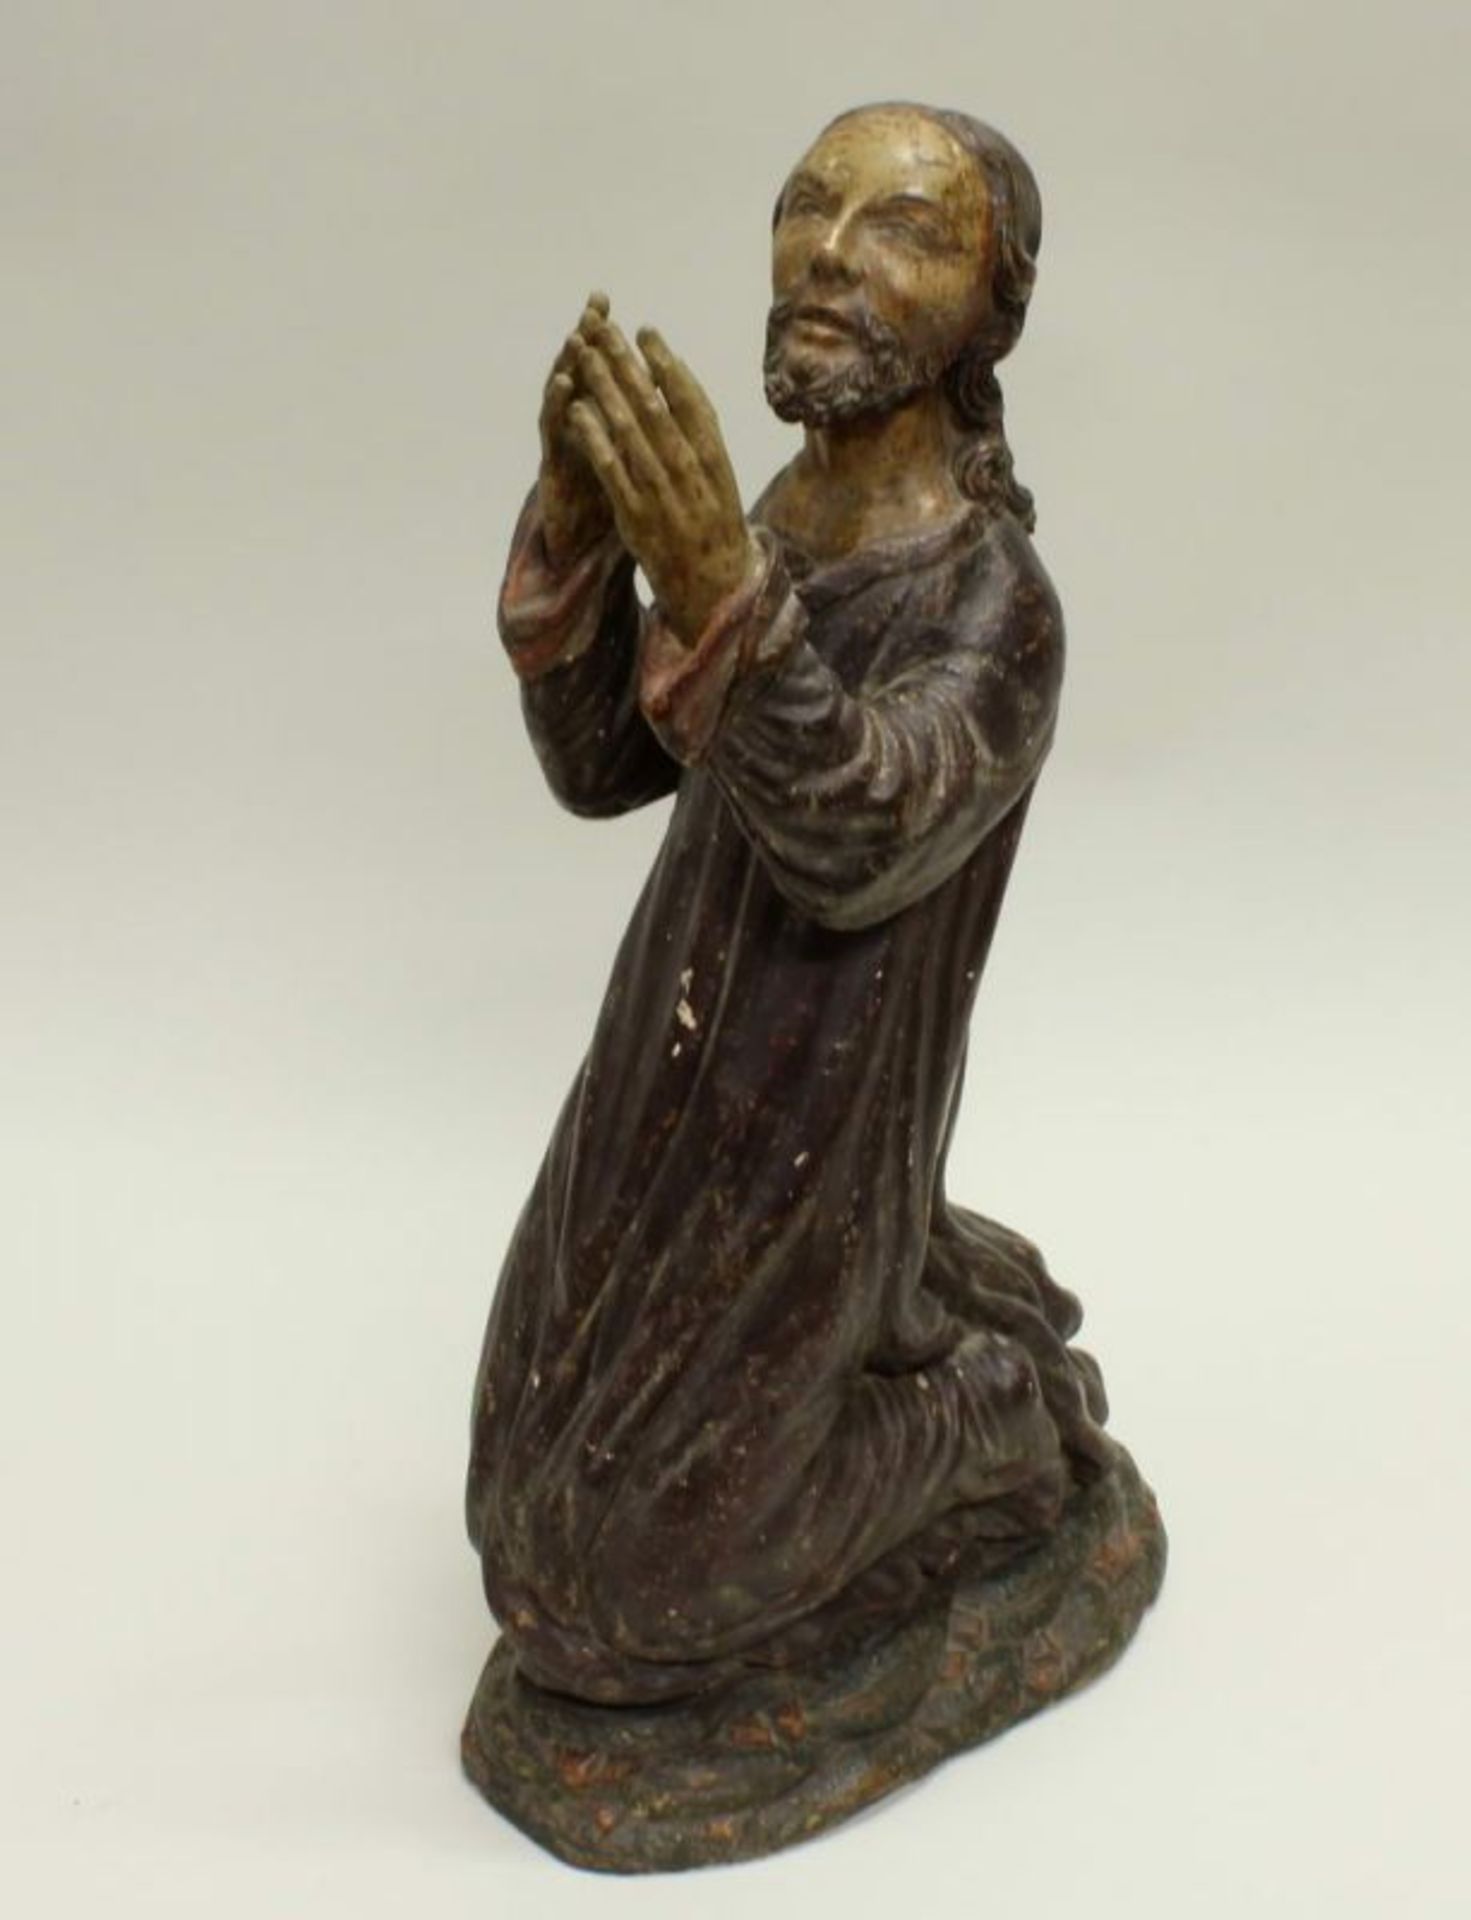 Skulptur, Holz geschnitzt, "Christus am Ölberg", 49 cm hoch, 16. Jh., mit späterer Fassung, leicht